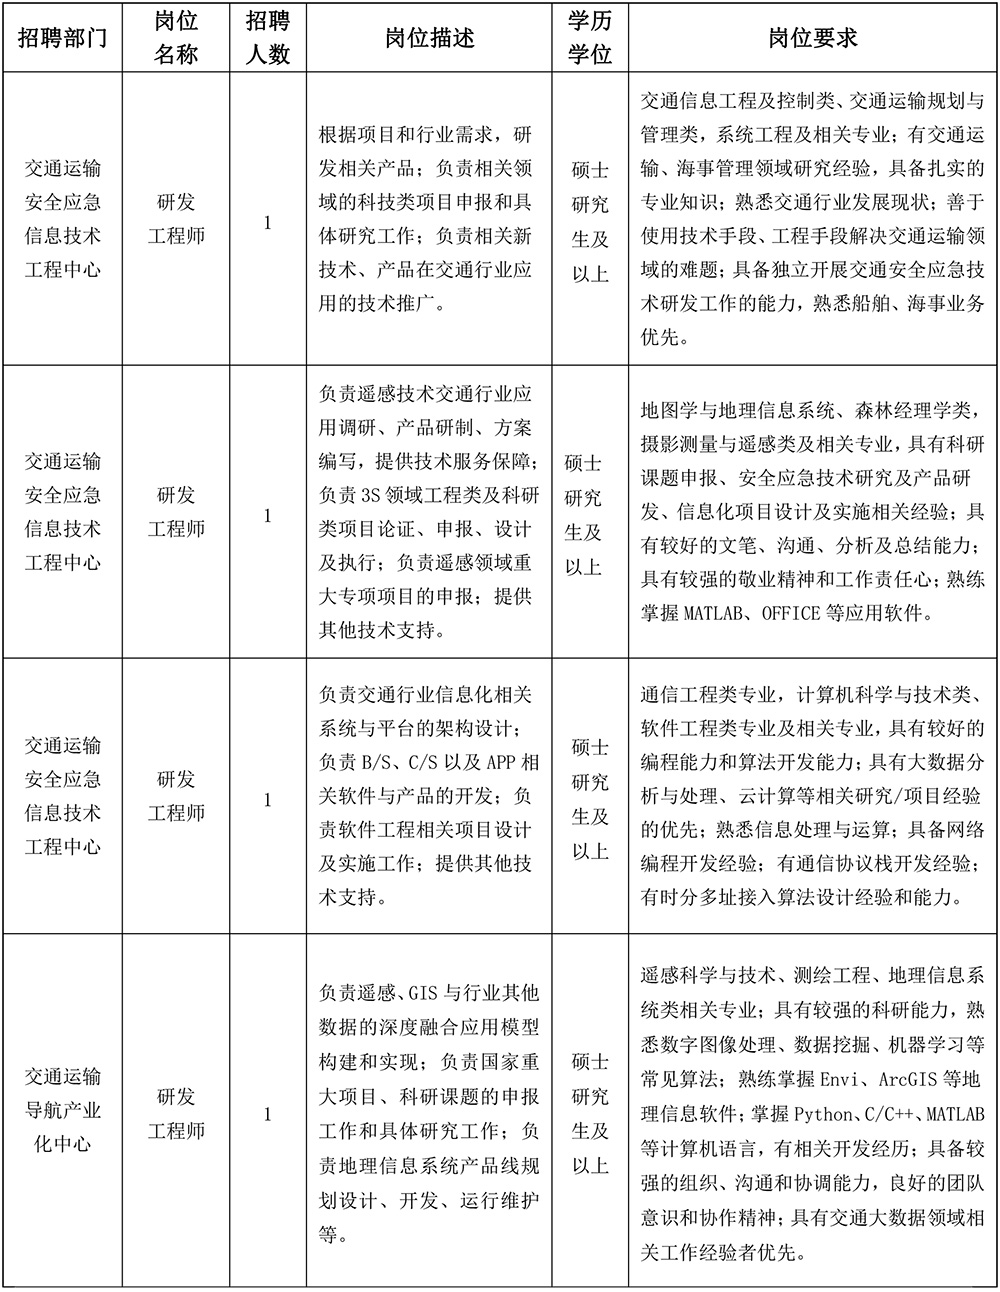 中国交通通信信息中心2020年度社会招聘人员招聘公告.jpg